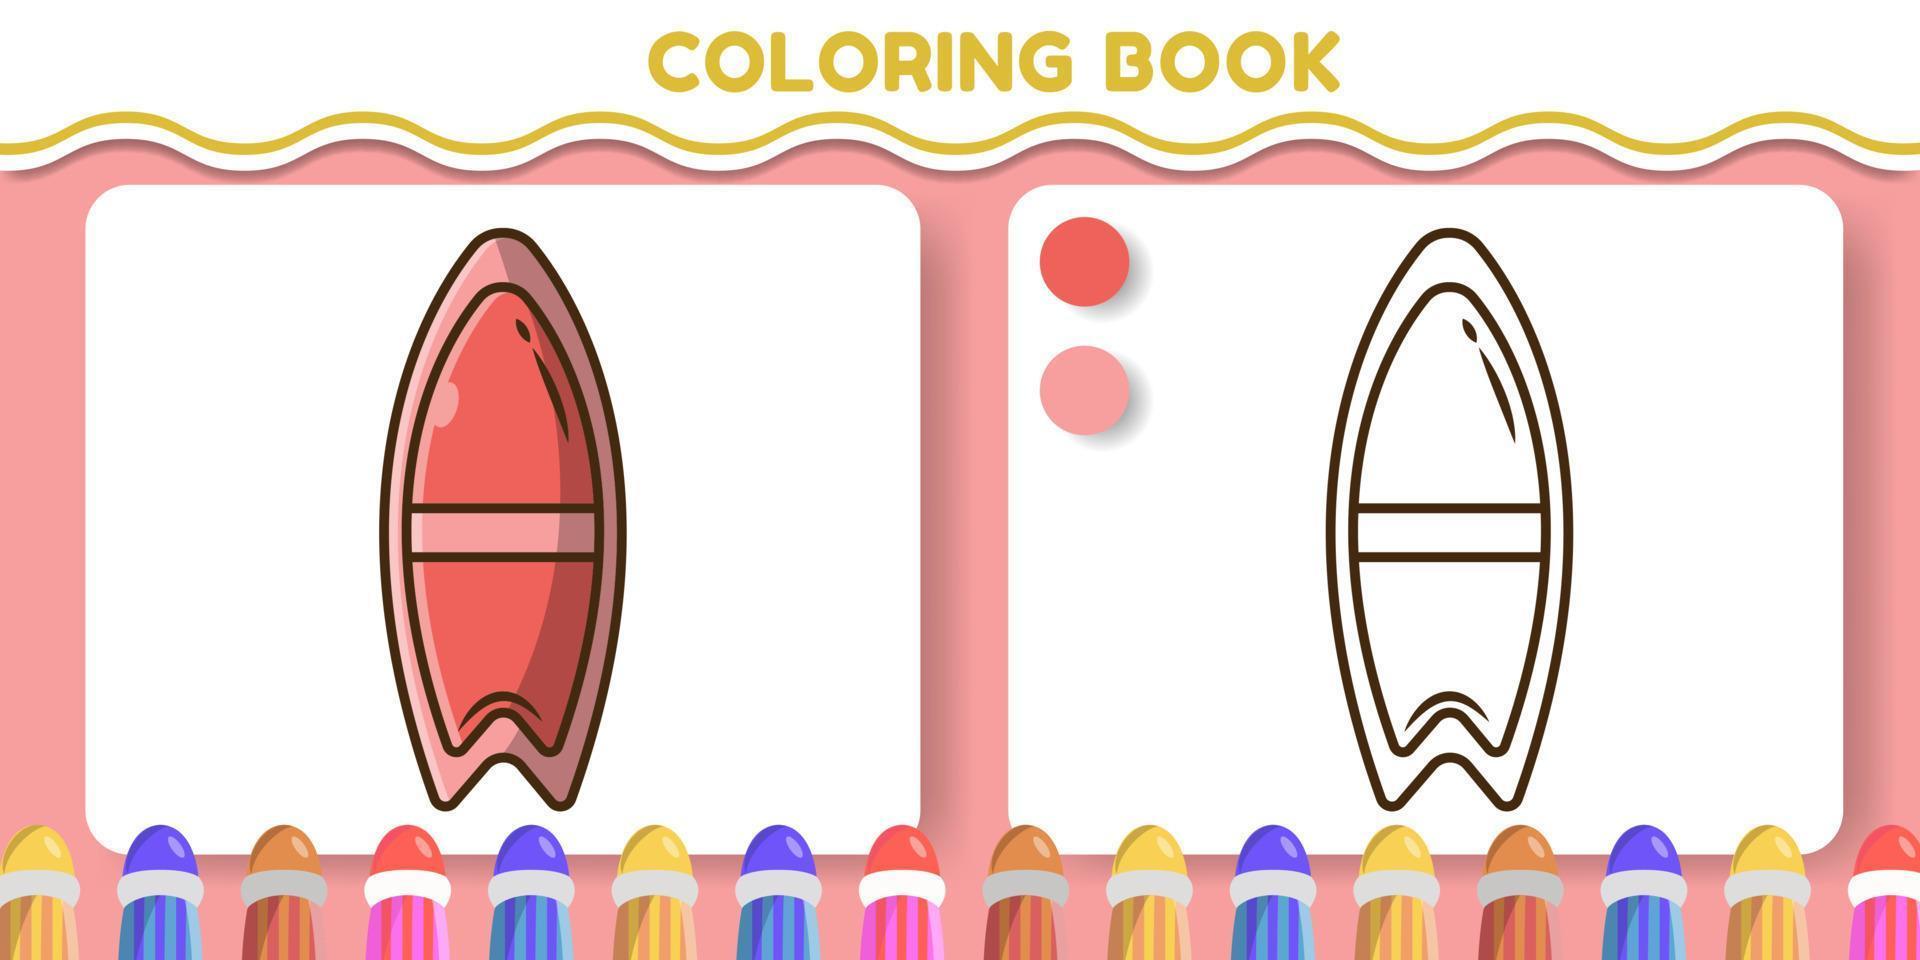 carino tavola da surf cartone animato disegnato a mano doodle libro da colorare per bambini vettore